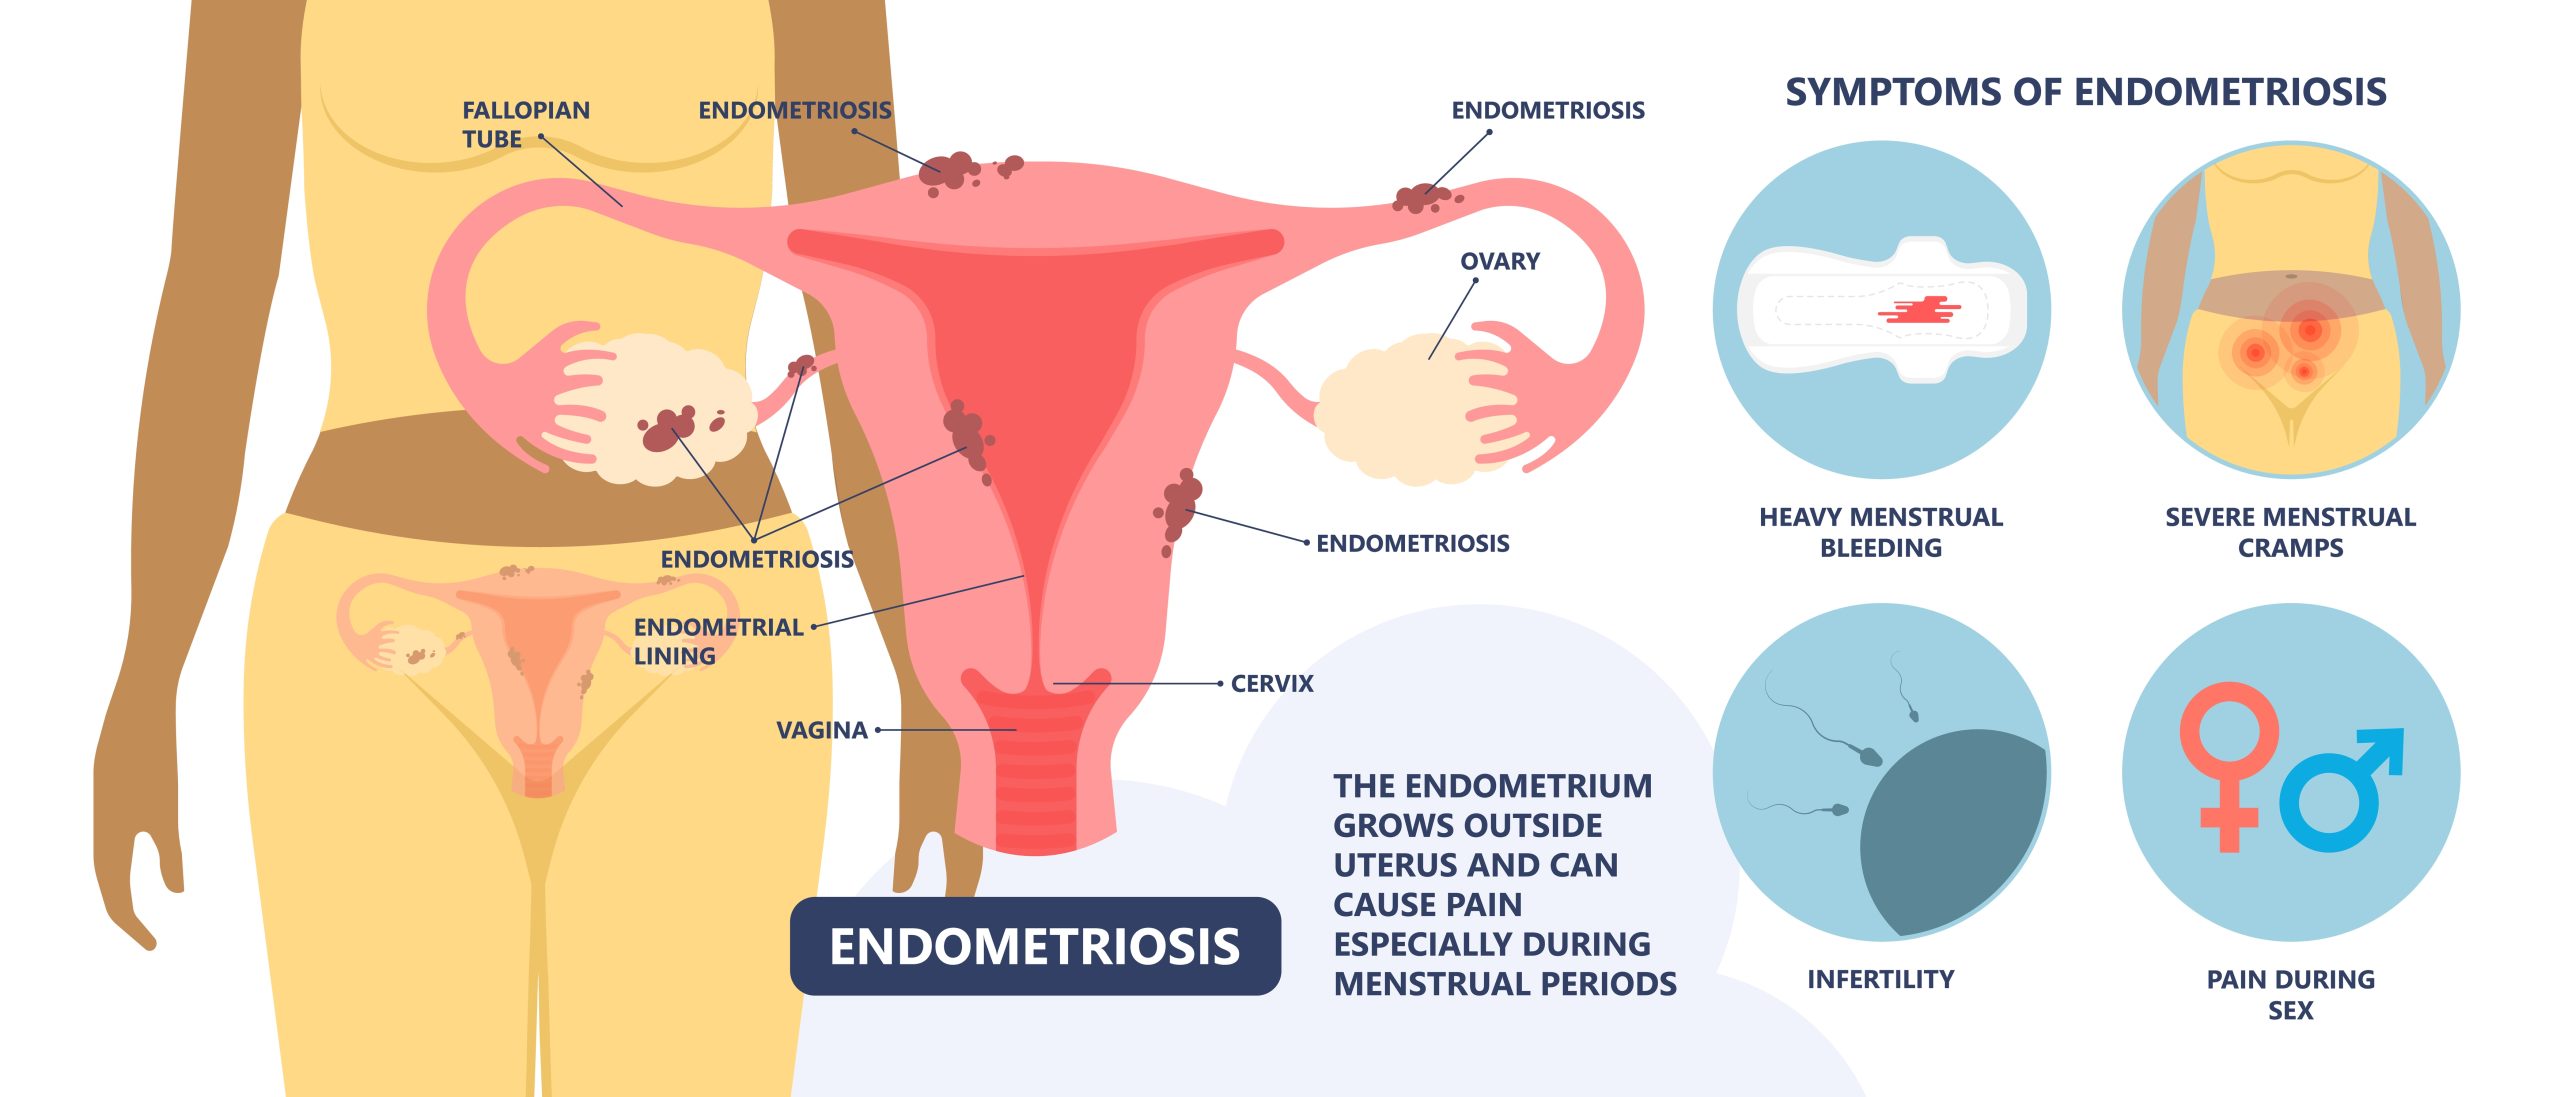 Endometriosis: how does it happen?